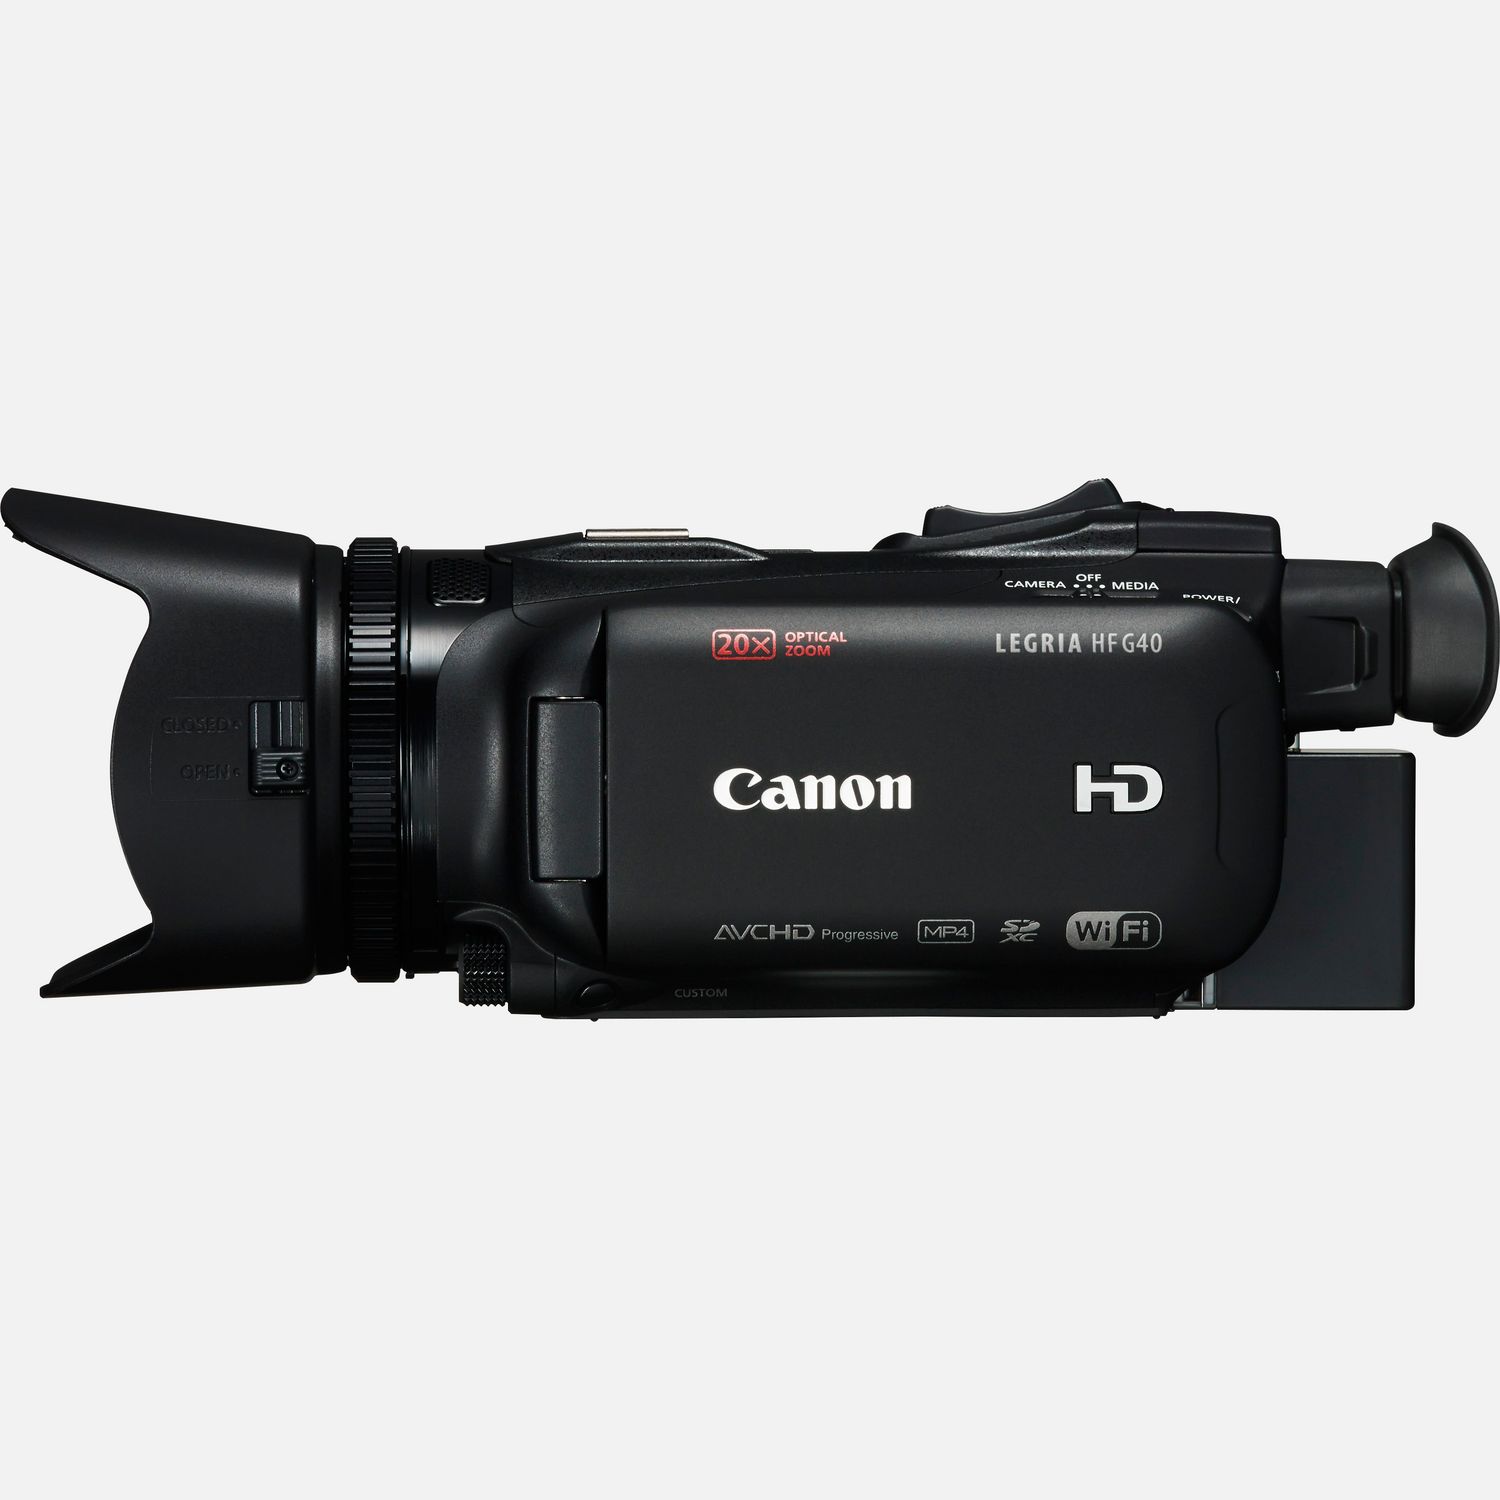 Videocámaras avanzadas — Tienda Canon Espana